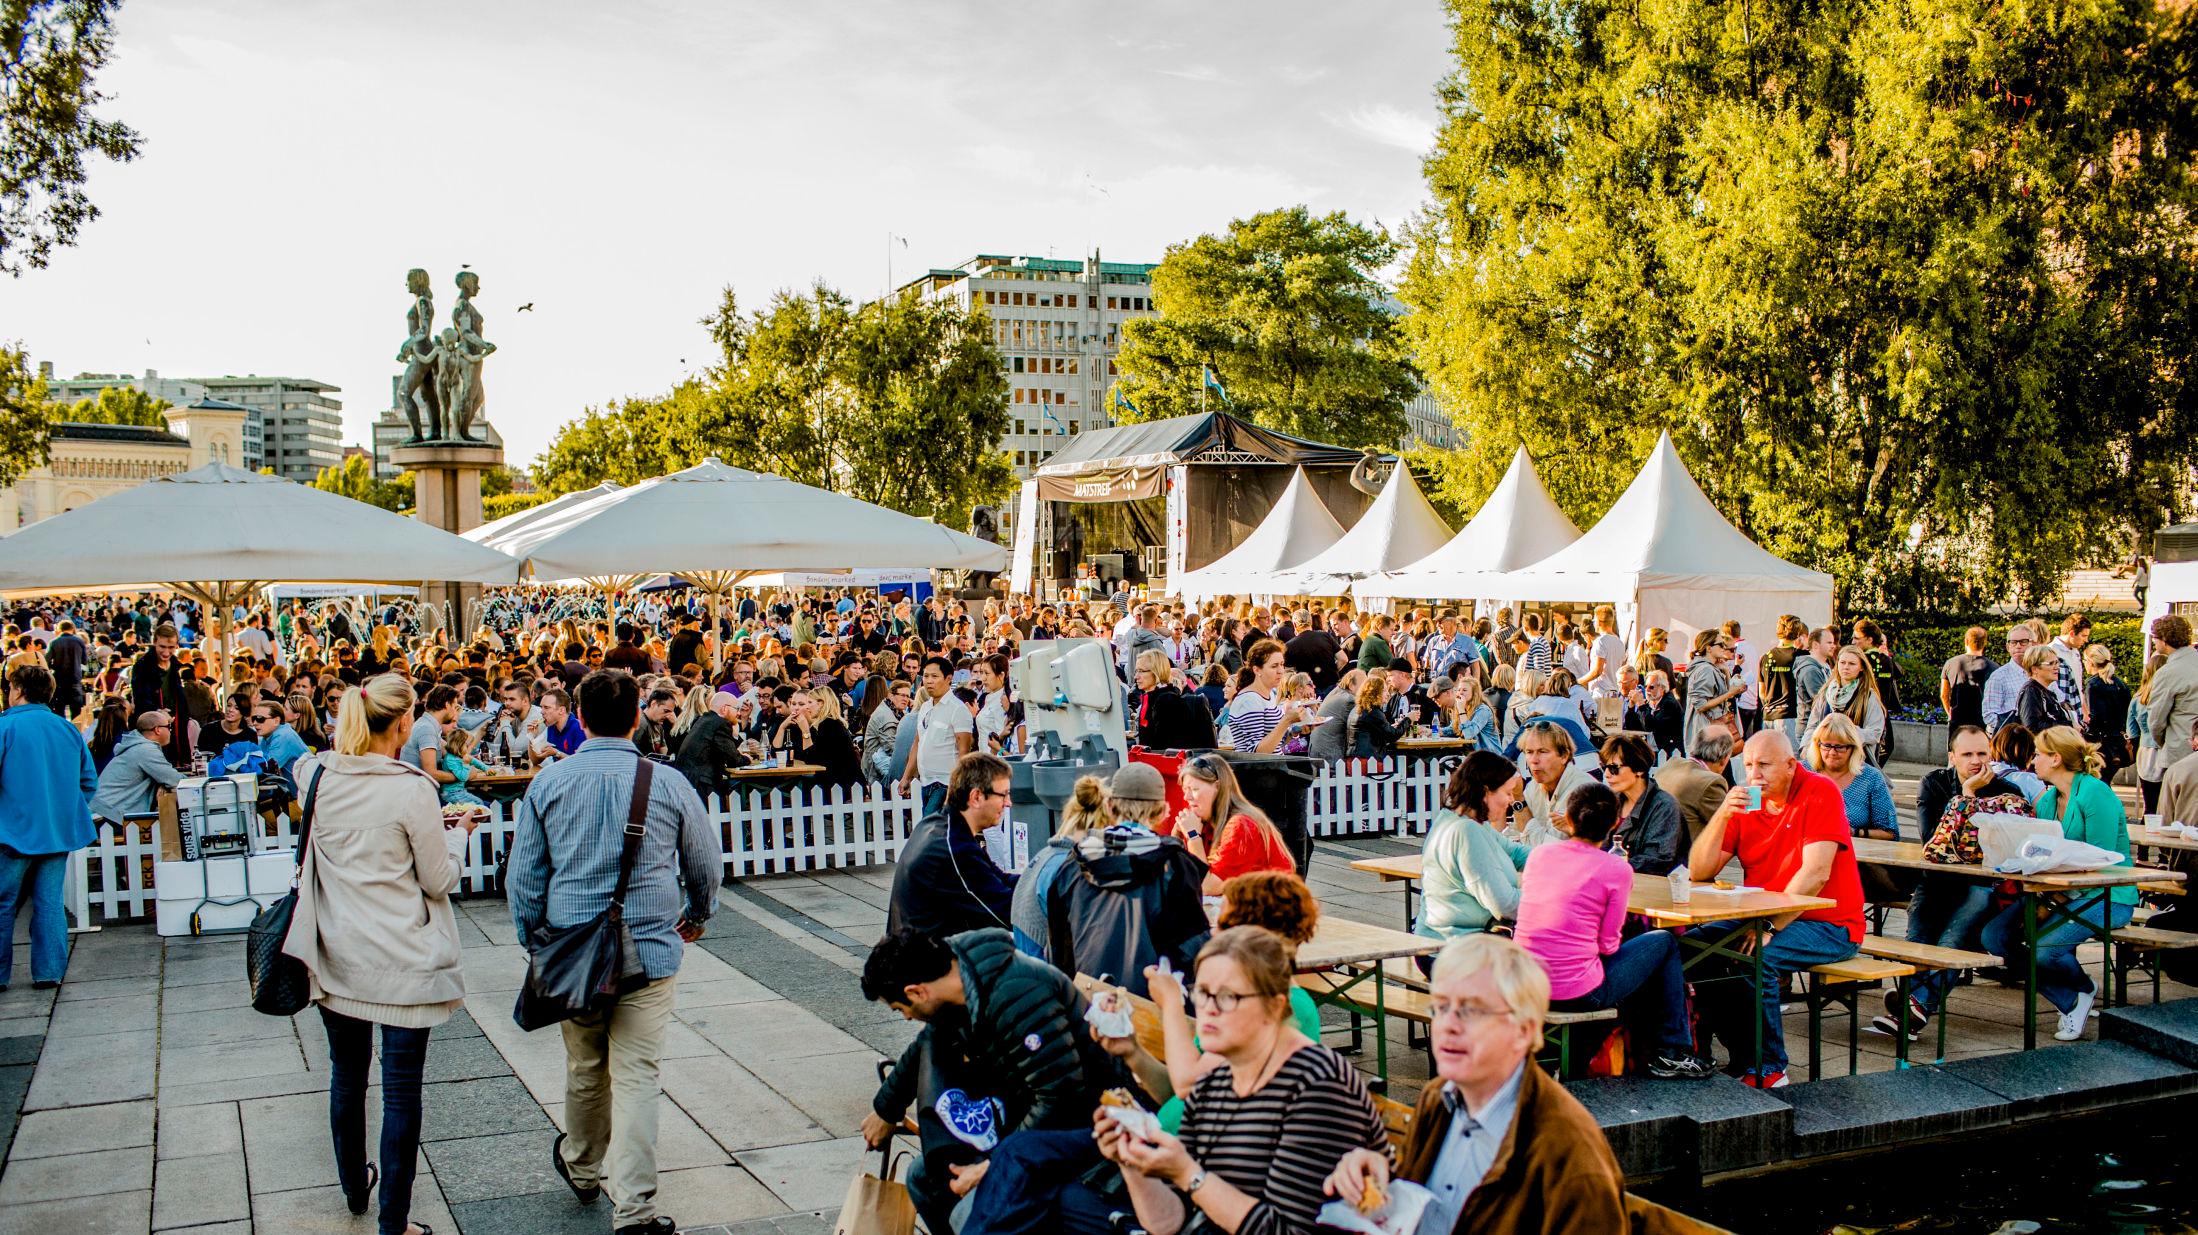 POPULÆRT: Festivalen i hovedstaden tiltrekker seg mange besøkende. Her fra tidligere Matstreif. Foto: Stian Lysberg Solum / NTB scanpix